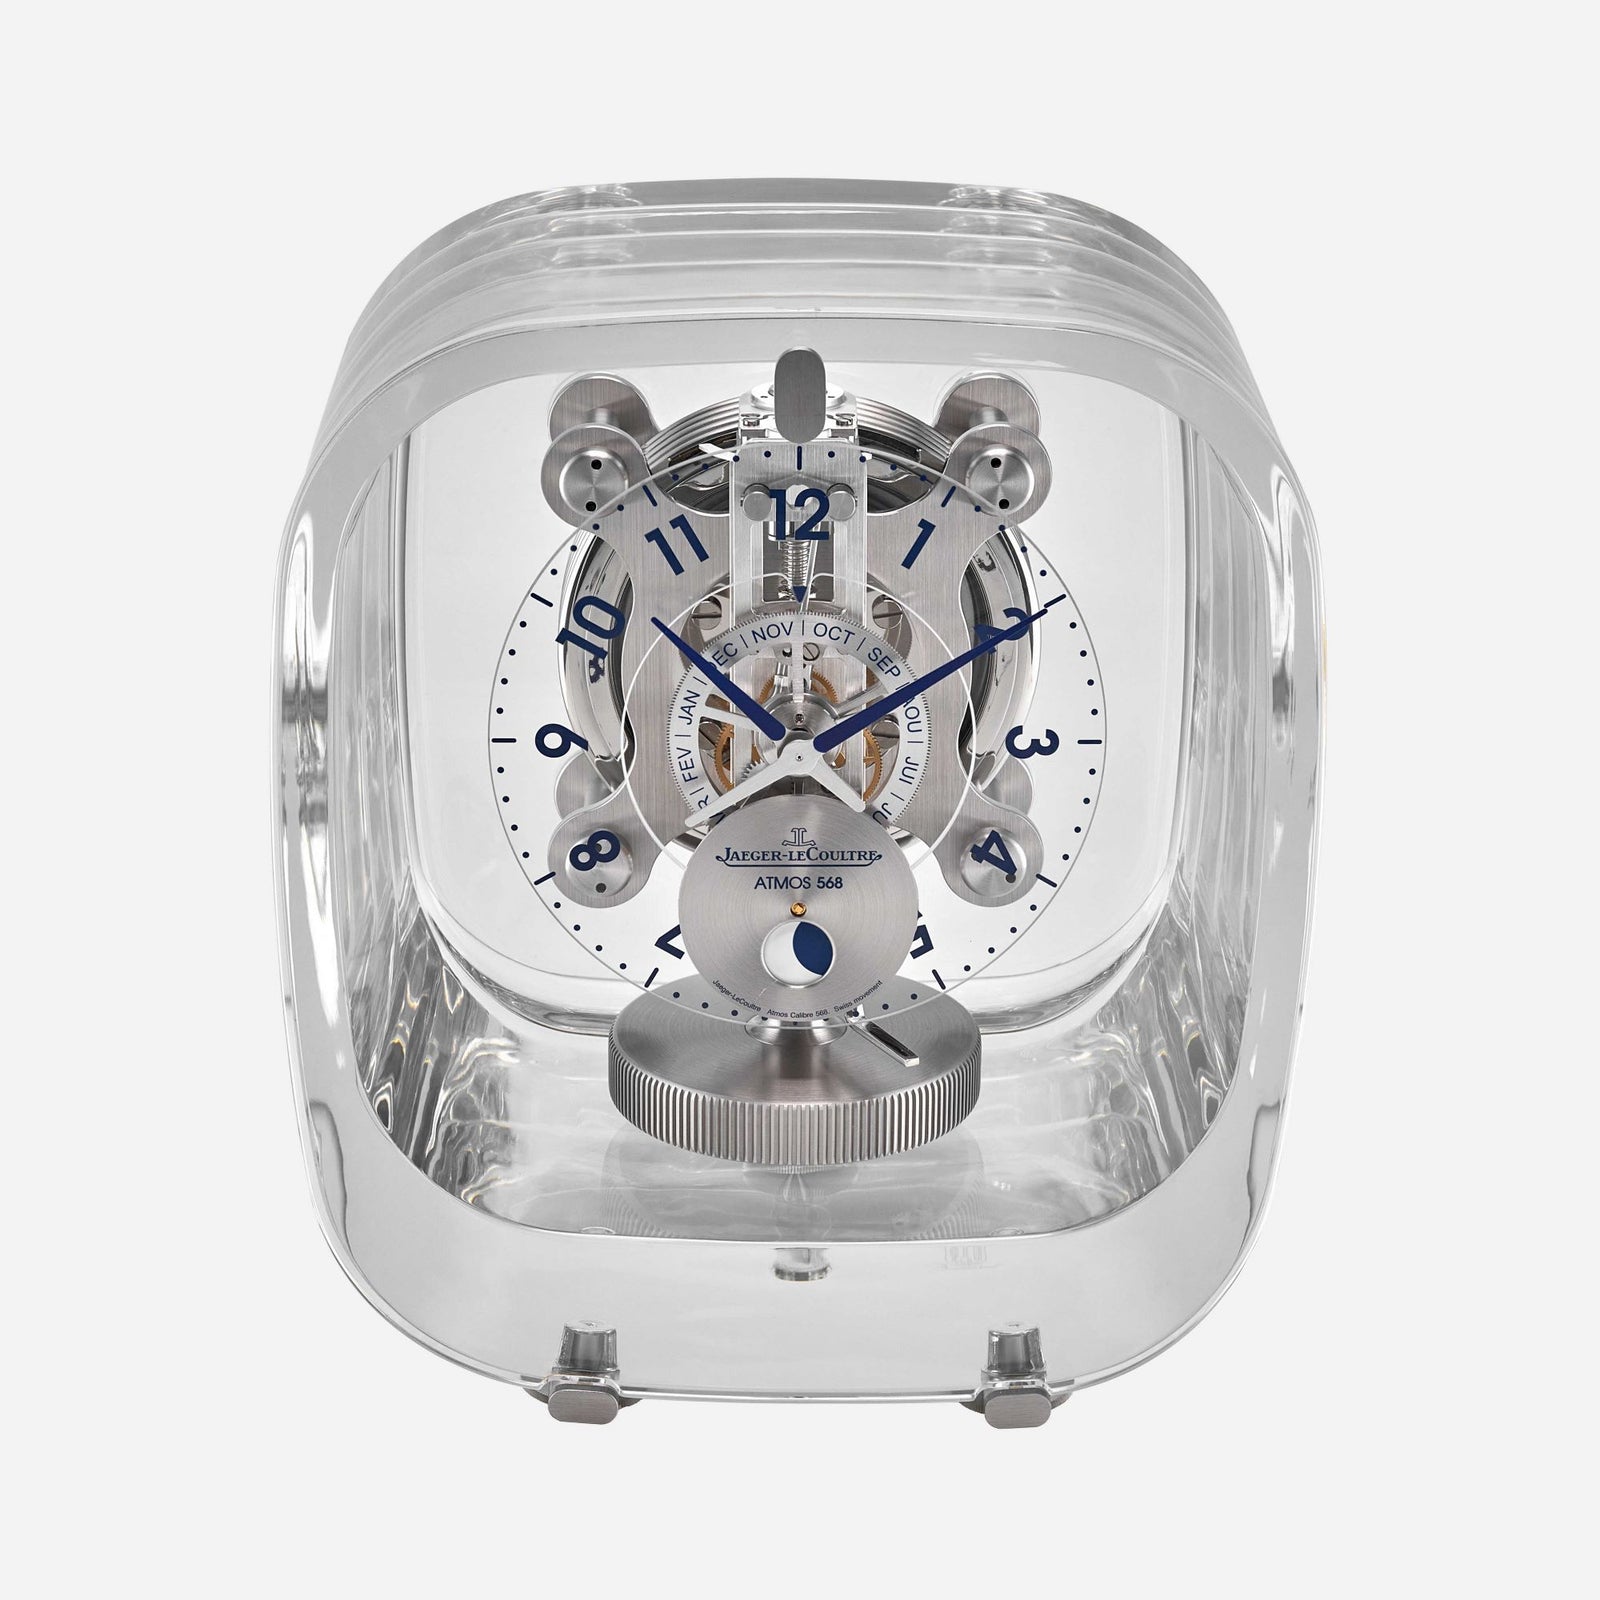 由 Marc Newson 设计的 Jaeger-LeCoultre Atmos 时钟的士兵形象 568